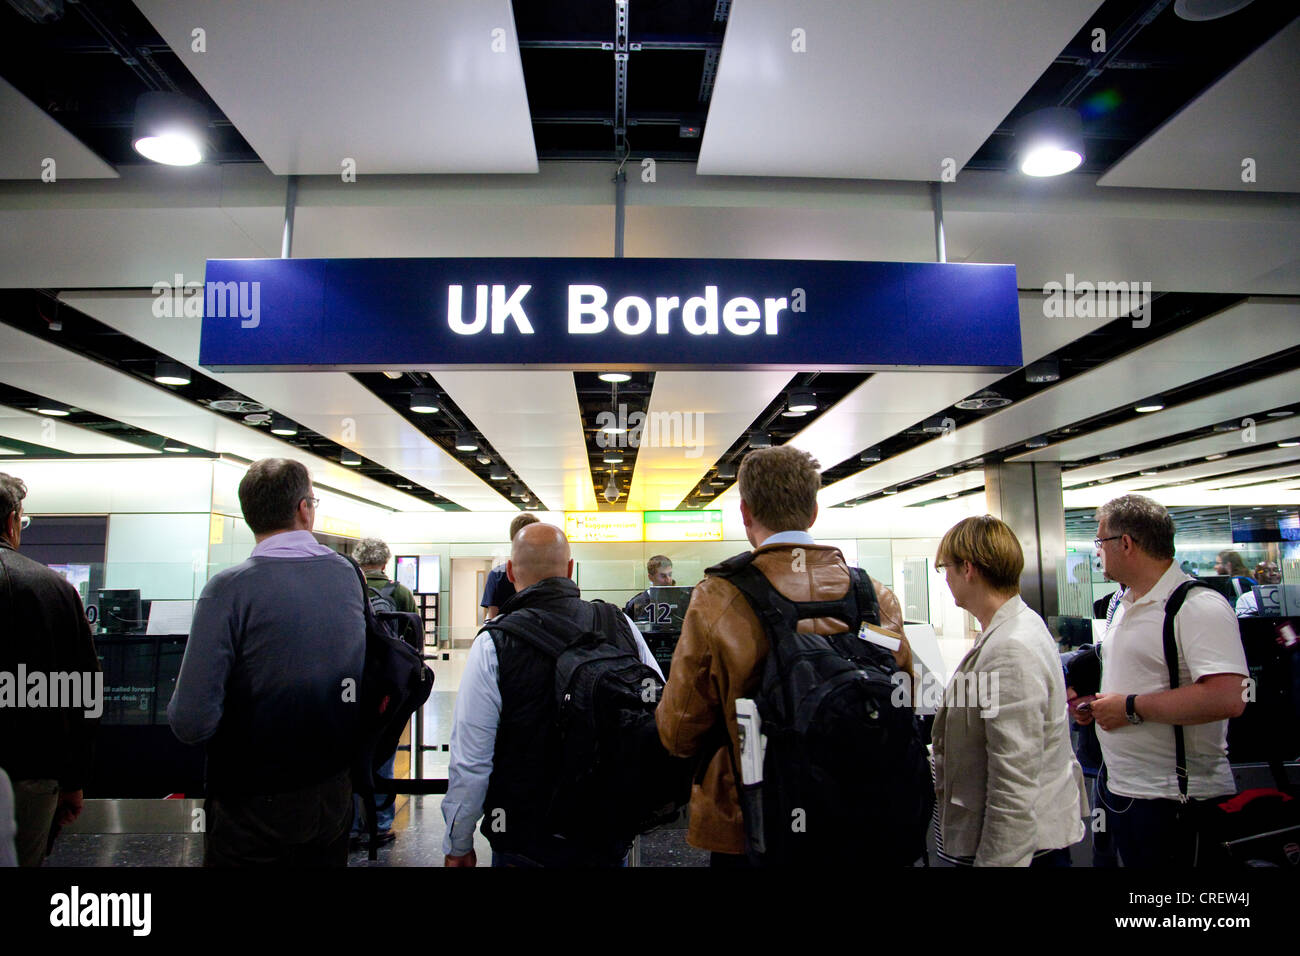 La borne de contrôle des passeports aux frontières du Royaume-Uni 3 l'aéroport de Heathrow, Angleterre, Royaume-Uni, UK Banque D'Images